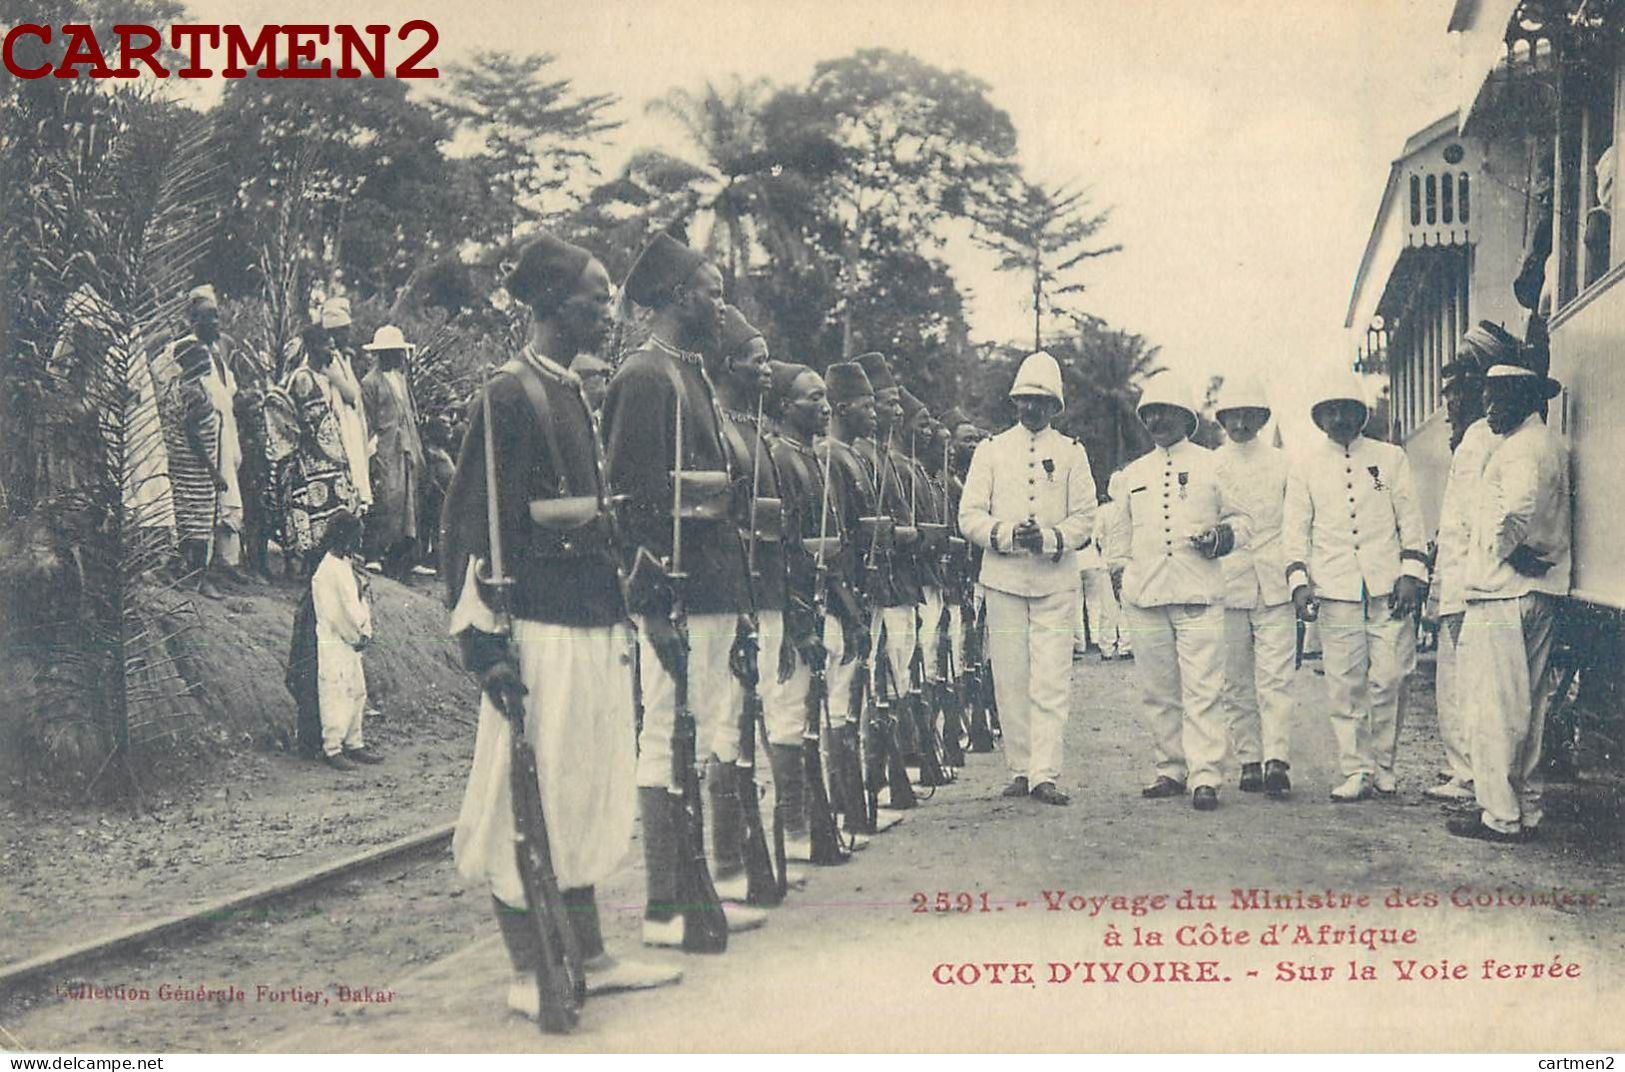 COTE-D'IVOIRE VOYAGE DU MINISTRE DES COLONIES A LA COTE D'AFRIQUE SUR LA VOIE FERREE GARE STATION ABIDJEAN POLITIQUE - Ivory Coast